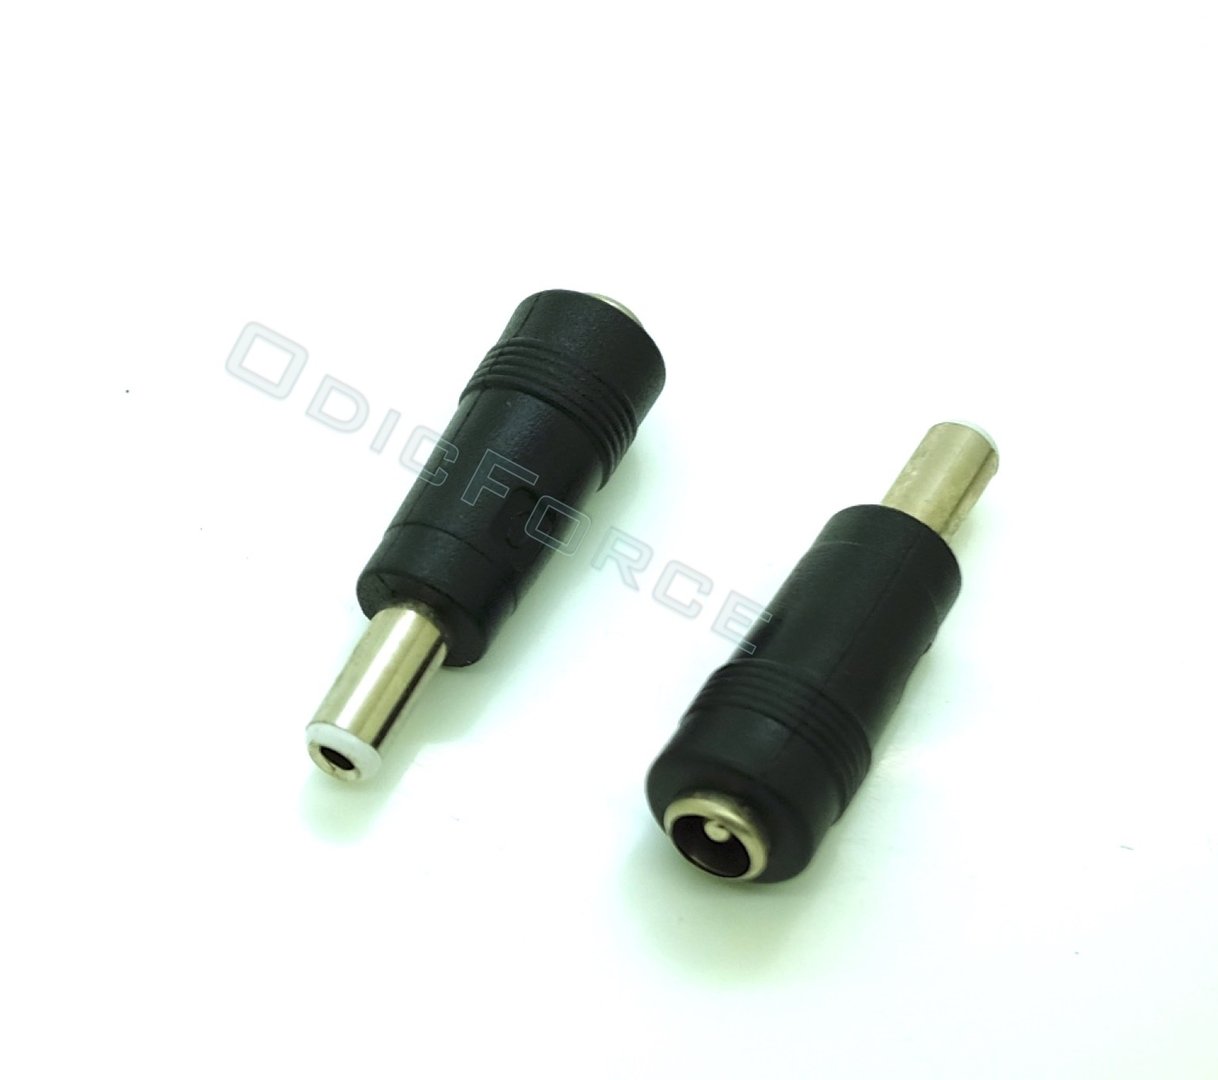 DC Adaptor 2.1mm x 5.5mm Socket to 2.5mm x 5.5mm Plug